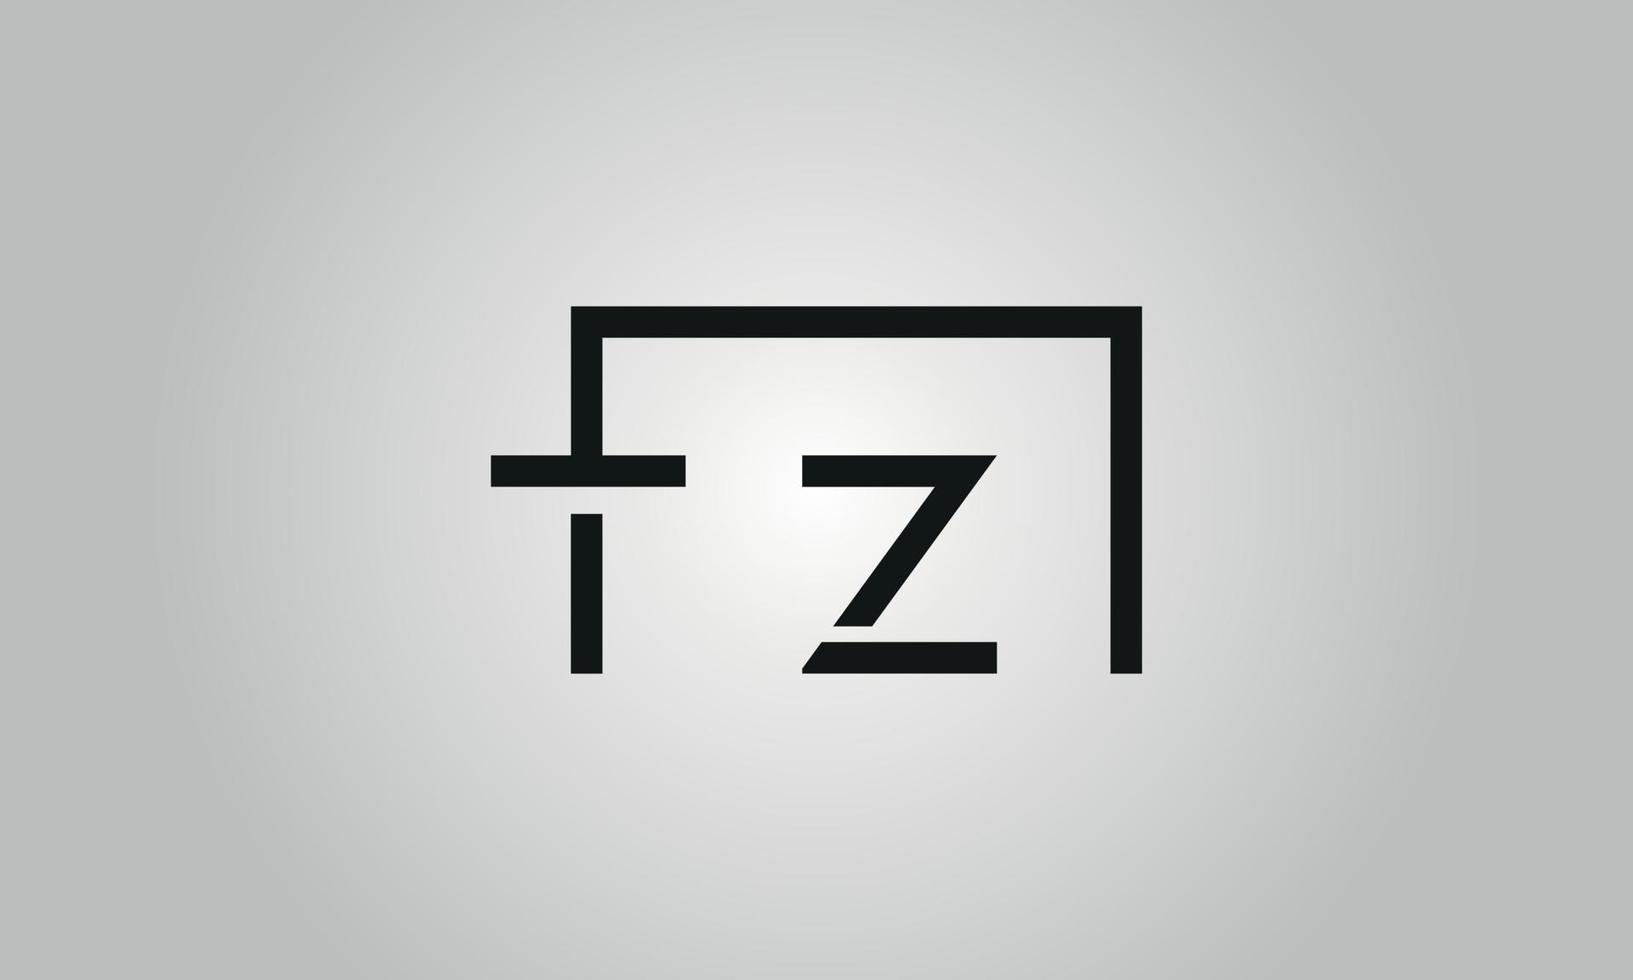 création de logo lettre tz. logo tz avec forme carrée dans le modèle vectoriel gratuit de couleurs noires.